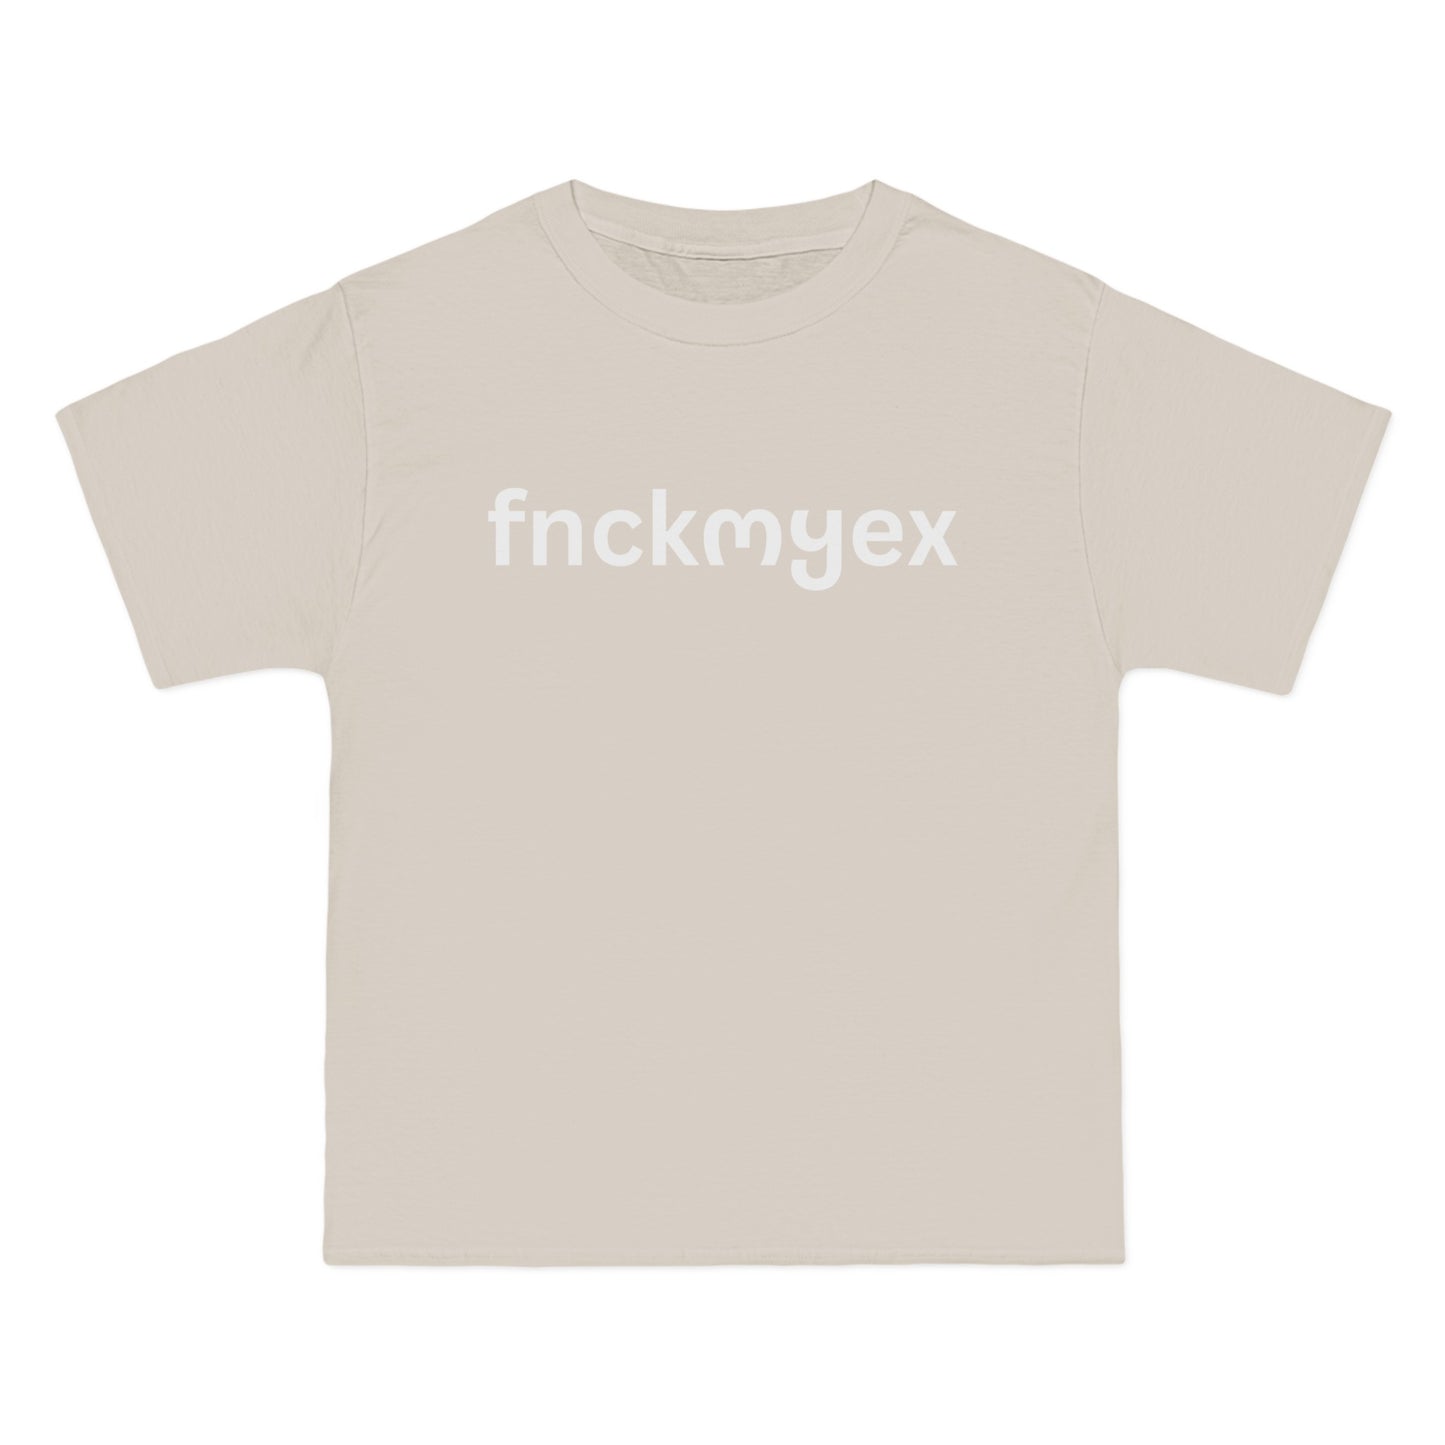 fnckmyex T-Shirt, White Print